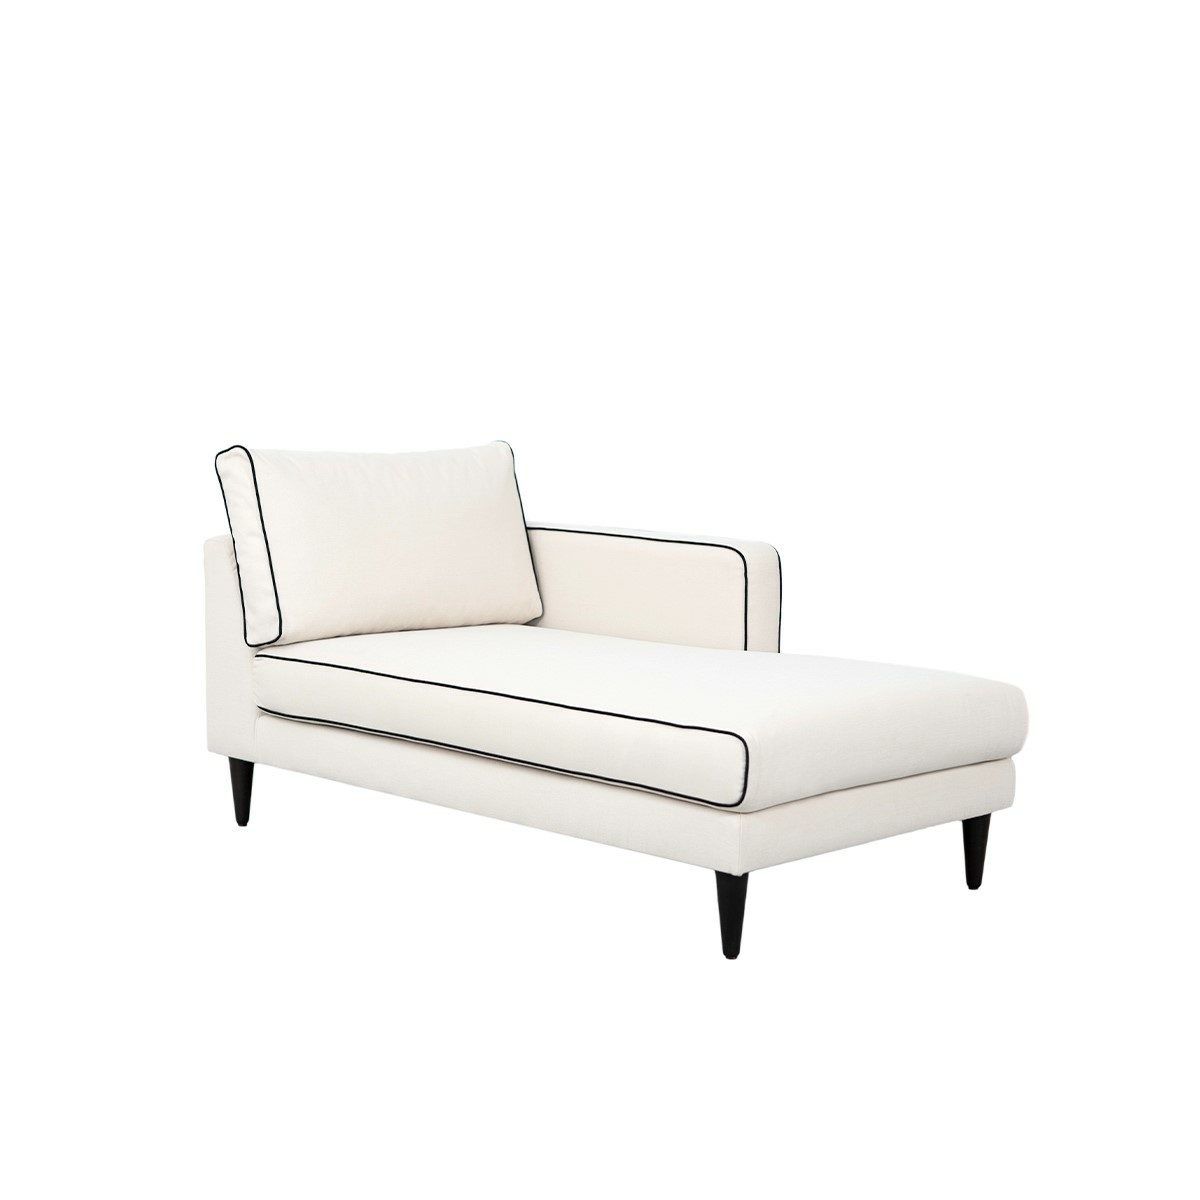 Noa sofa - Right armrest, L150 x P80 x H75 cm - Cotton - image 1